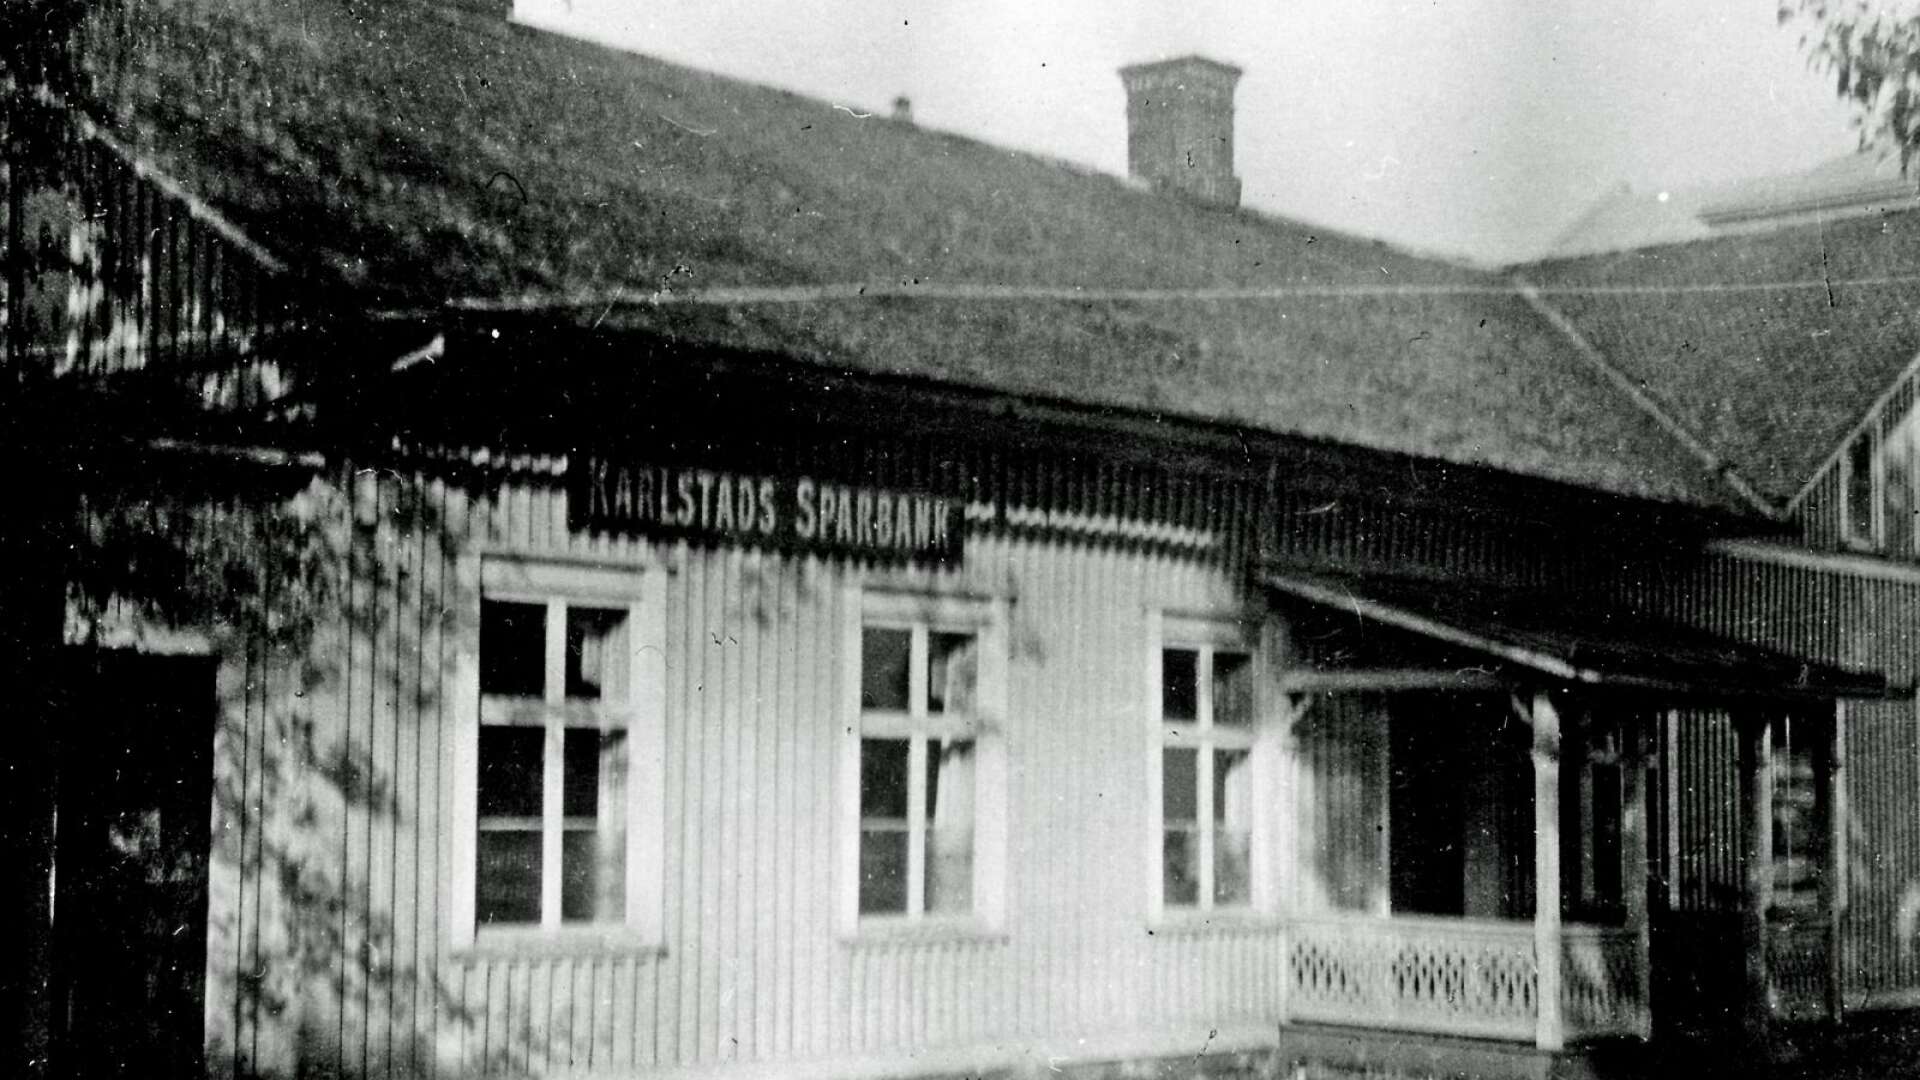 Karlstads Sparbank öppnade redan 1919 expedition i Säffle, men hade långt innan det haft ombud i Säffle med omnejd. Expeditionen låg i ett hus som revs för att ge plats för nybygget 1938-1939.